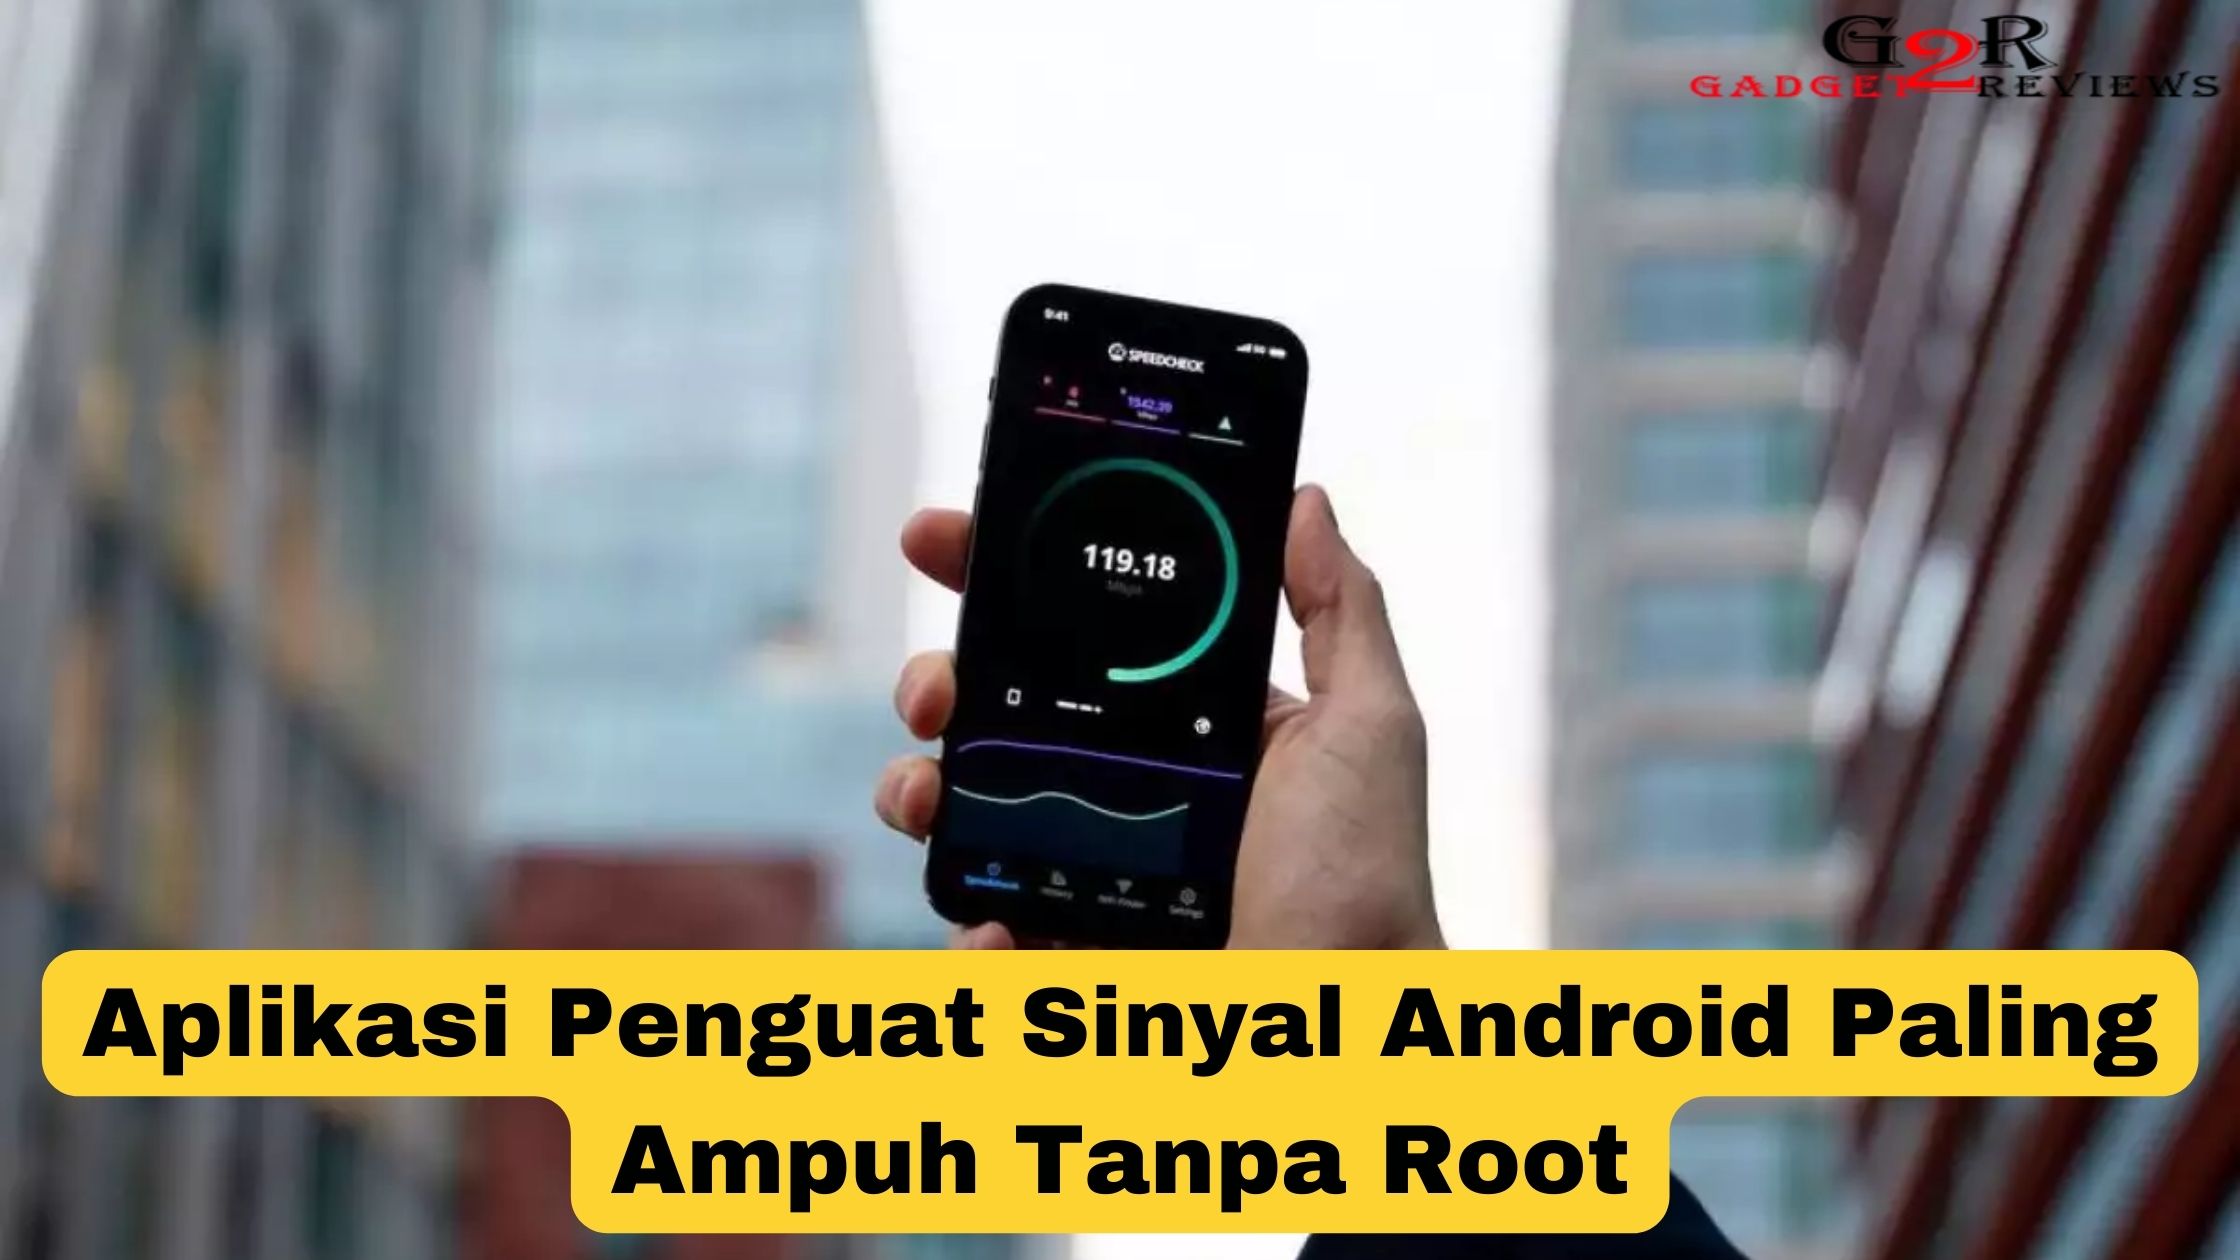 Aplikasi Penguat Sinyal Android Paling Ampuh Tanpa Root